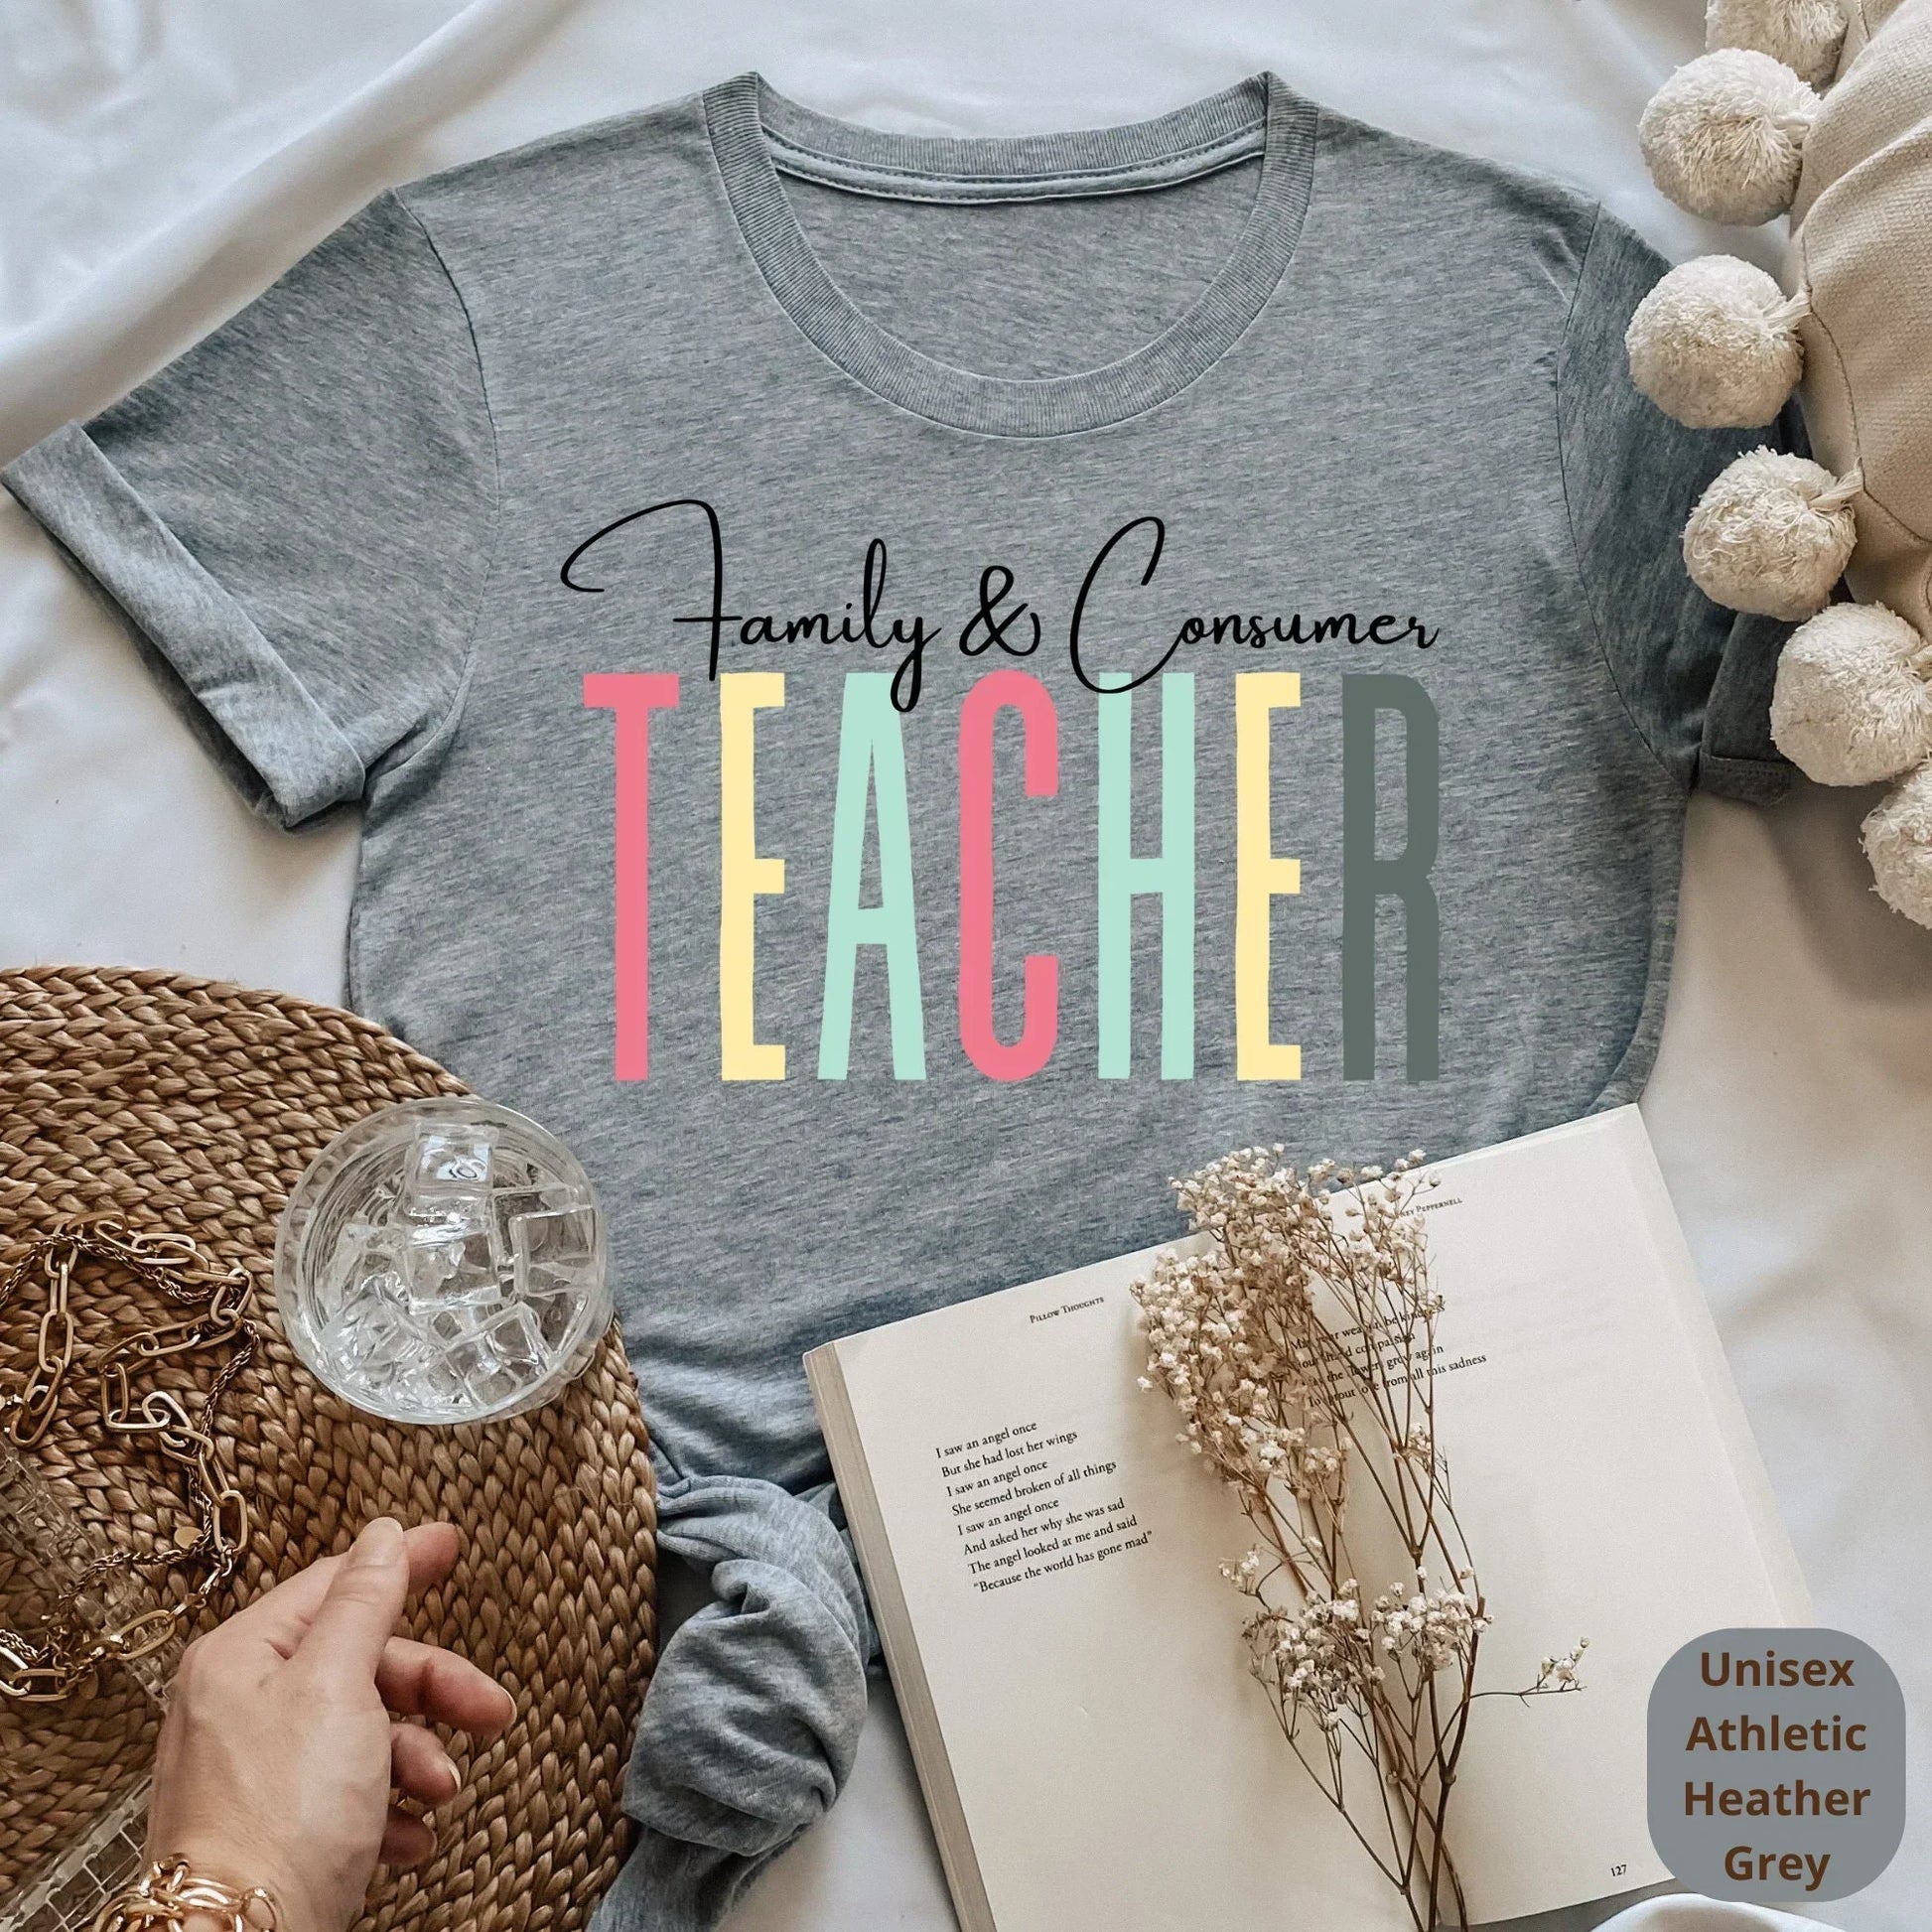 FCS Teacher Shirt, Family and consumer, FCS Shift, Teacher Appreciation, Home EC, Science Teacher, Student Teacher Gift, Home Economics HMDesignStudioUS